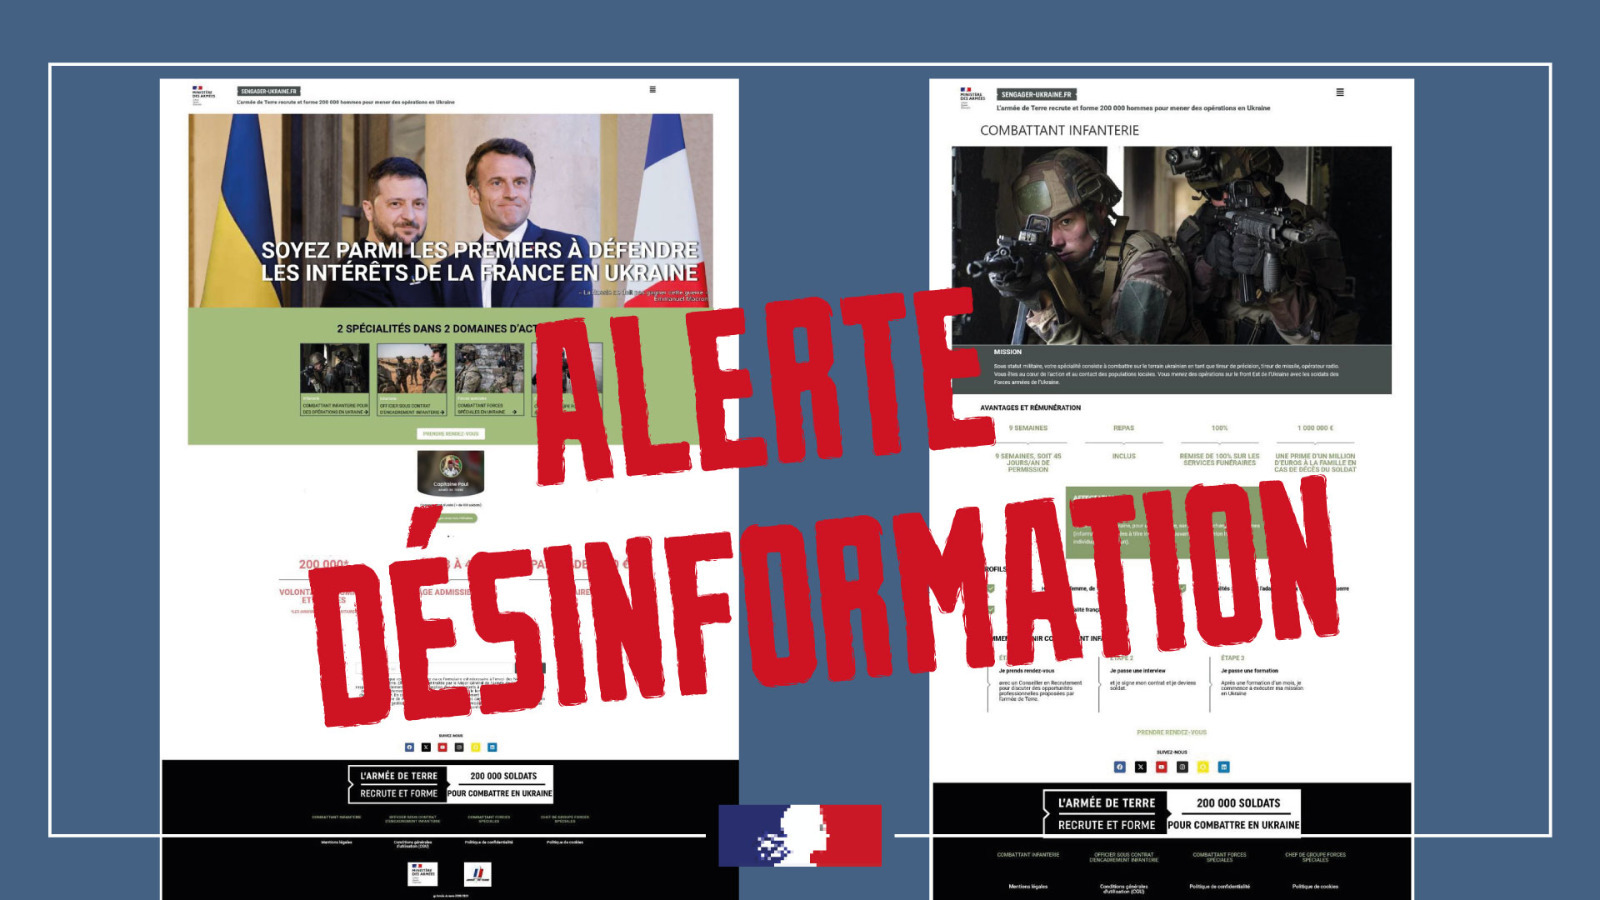 Міністерство оборони Франції та урядові кіберпідрозділи проводять розслідування.